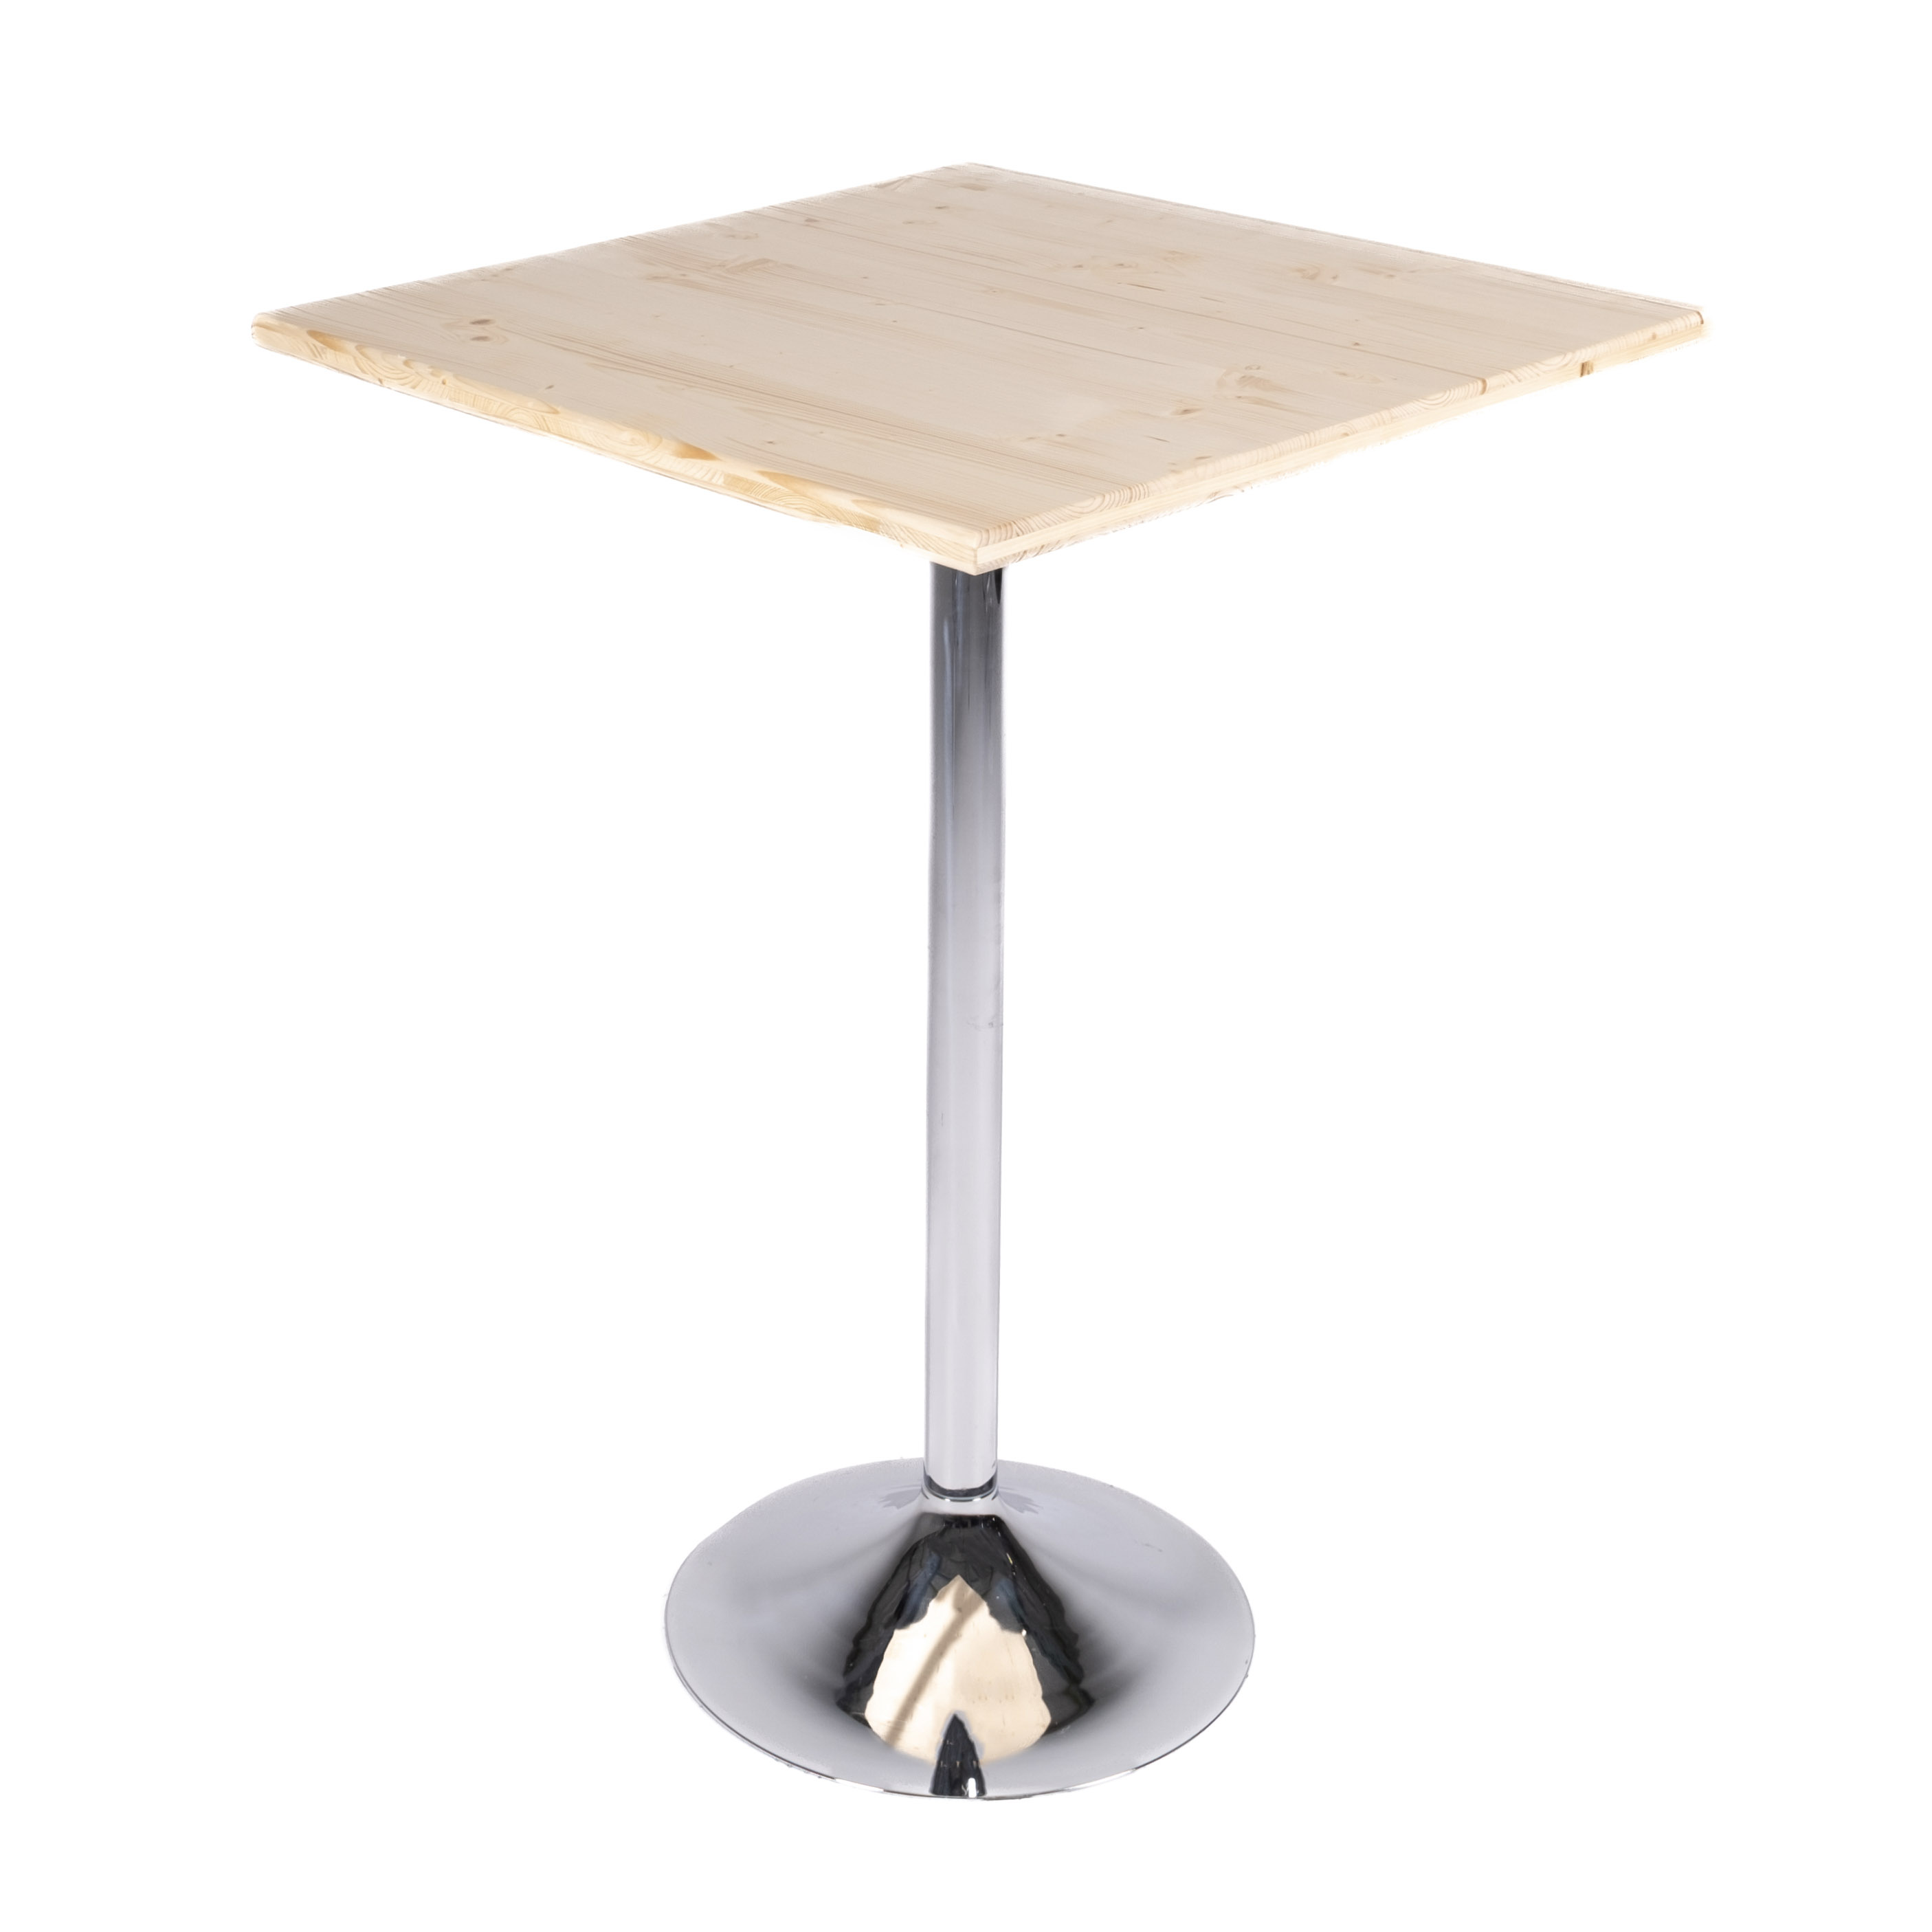 Table trévise h110 pieds chrome - 75x75 plateau eco 3 plis